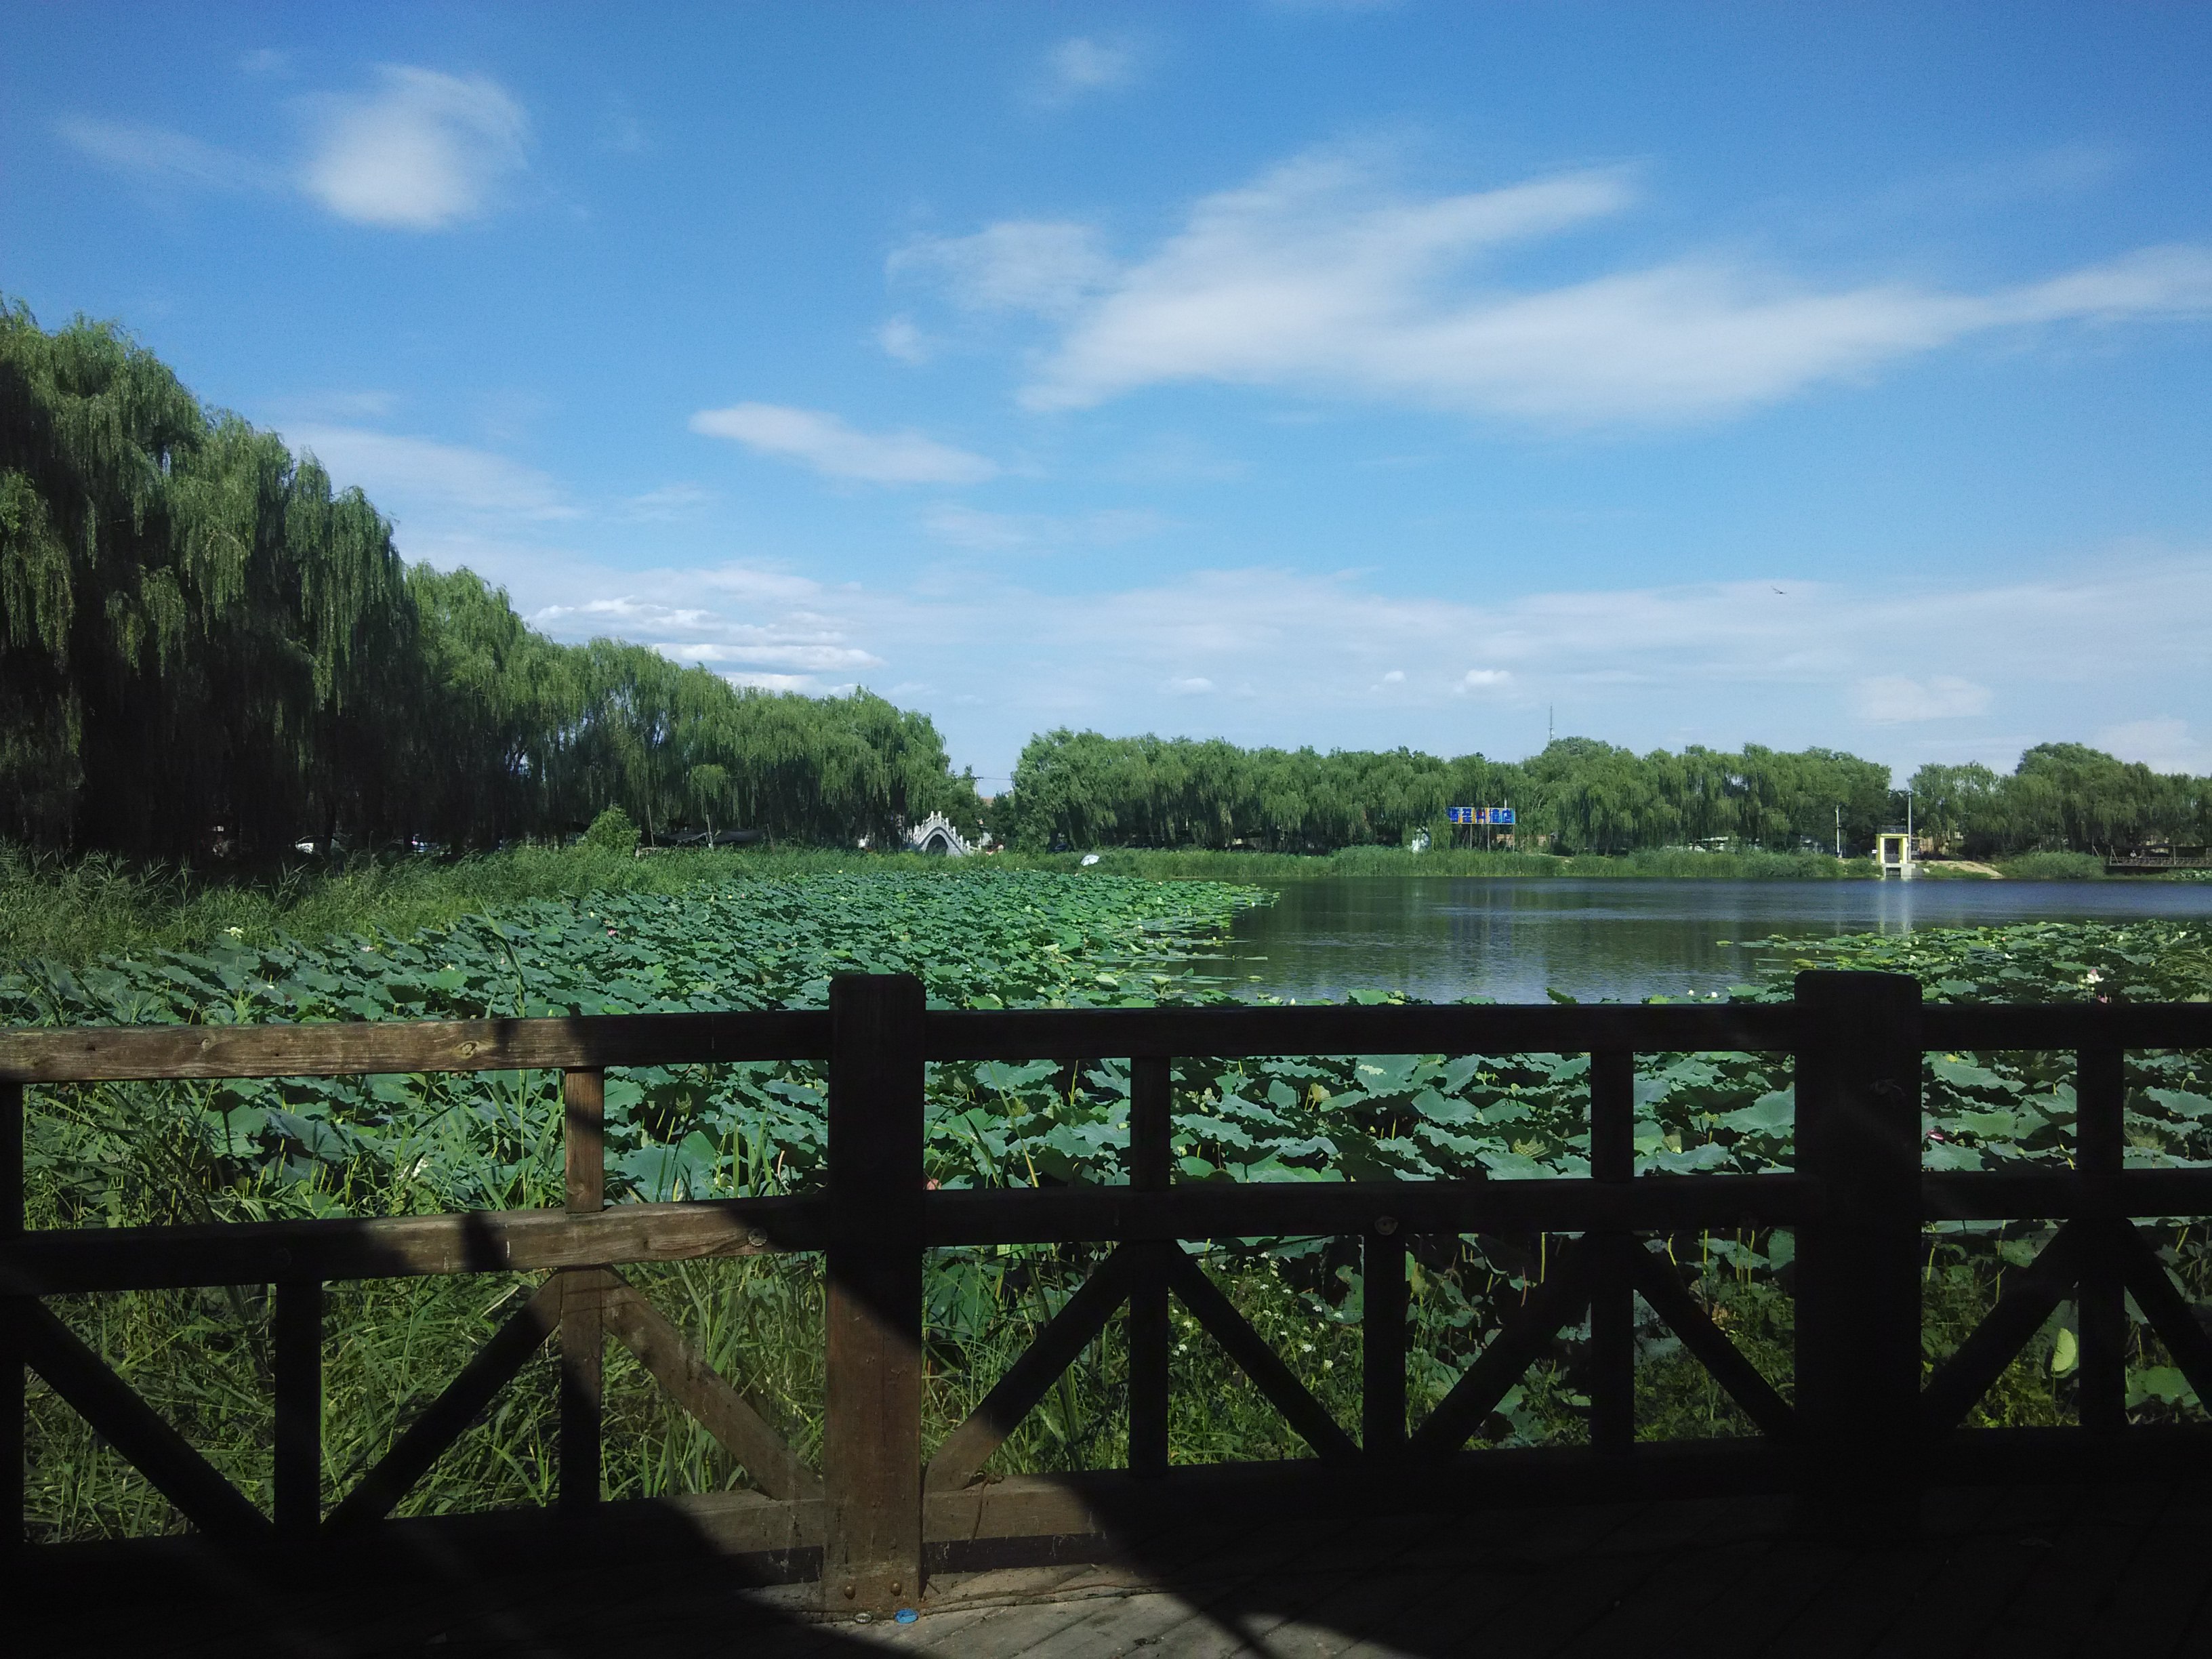 上庄水库湿地公园图片